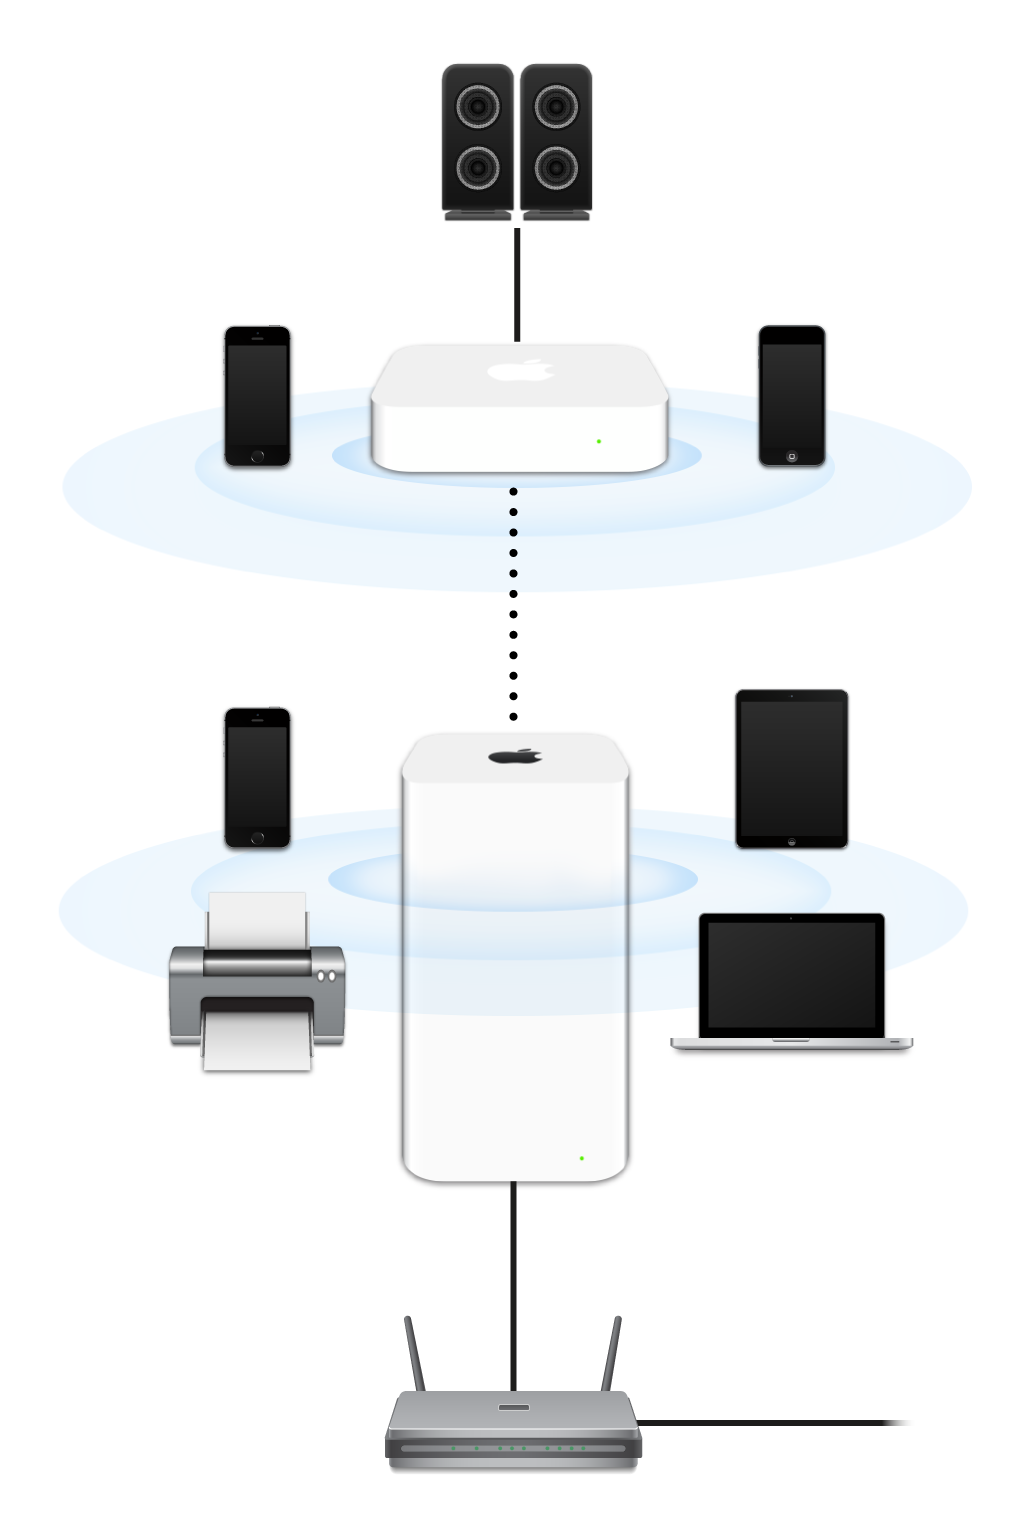 Proširena mreža, uključujući AirPort Extreme i AirPort Express, koja je priključena na modem i odašilje signale prema različitim uređajima.